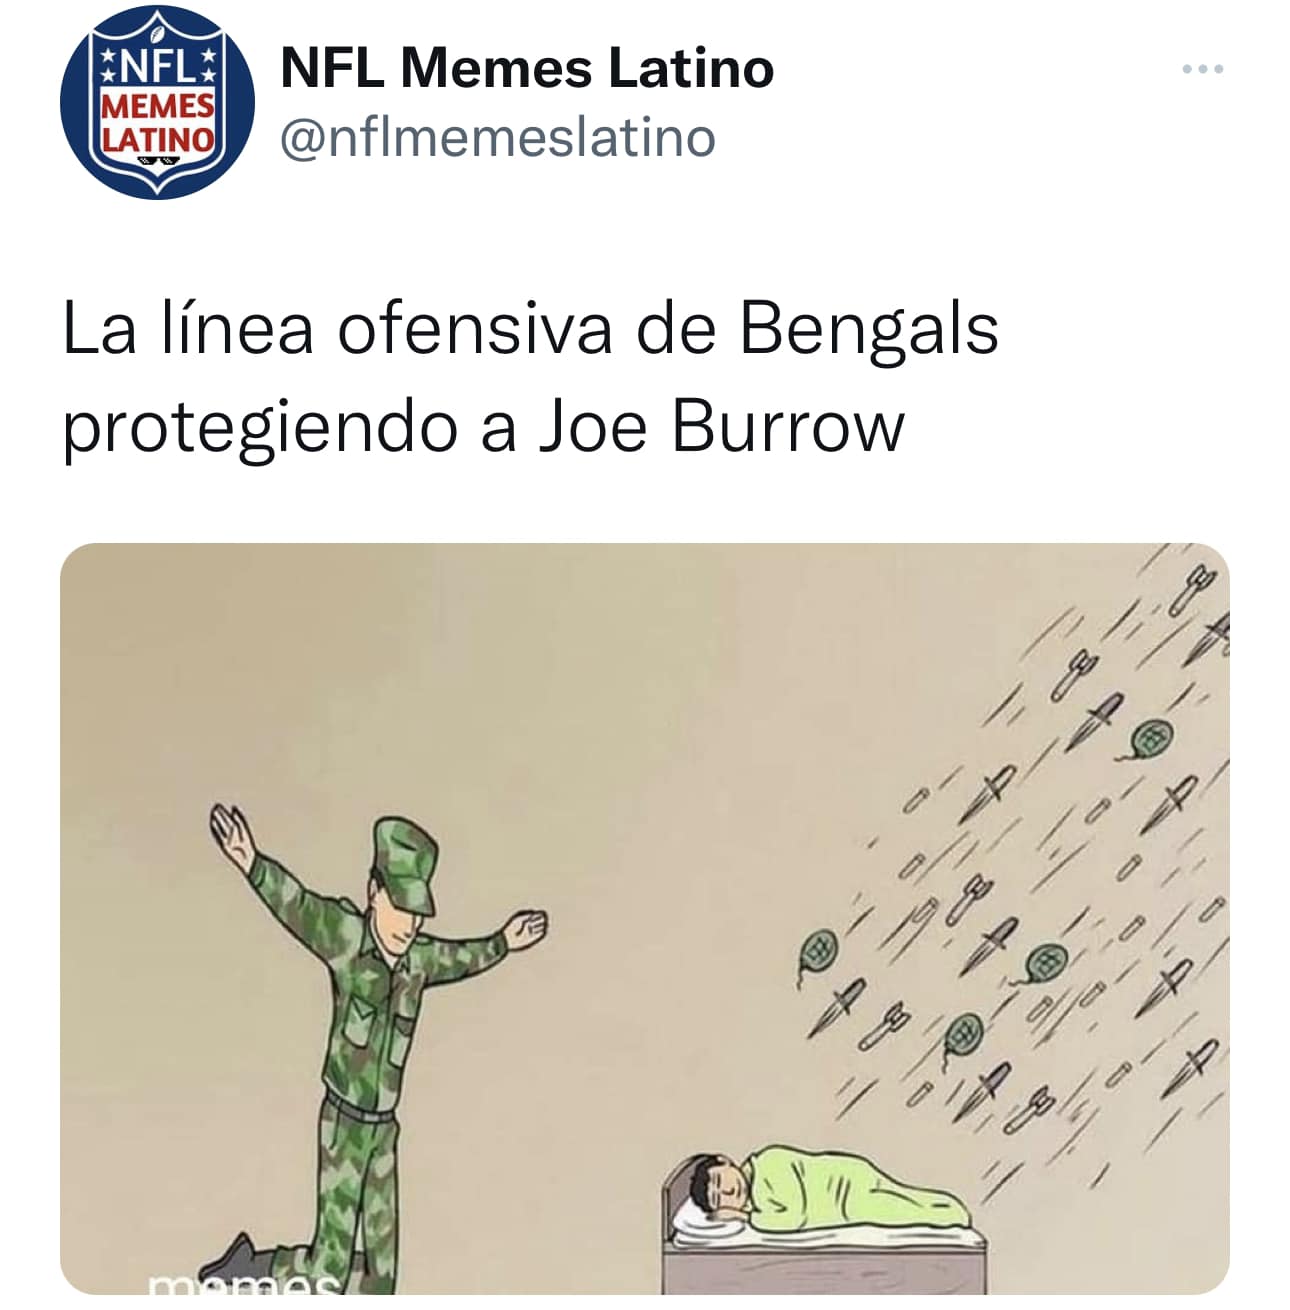 Memes Latino